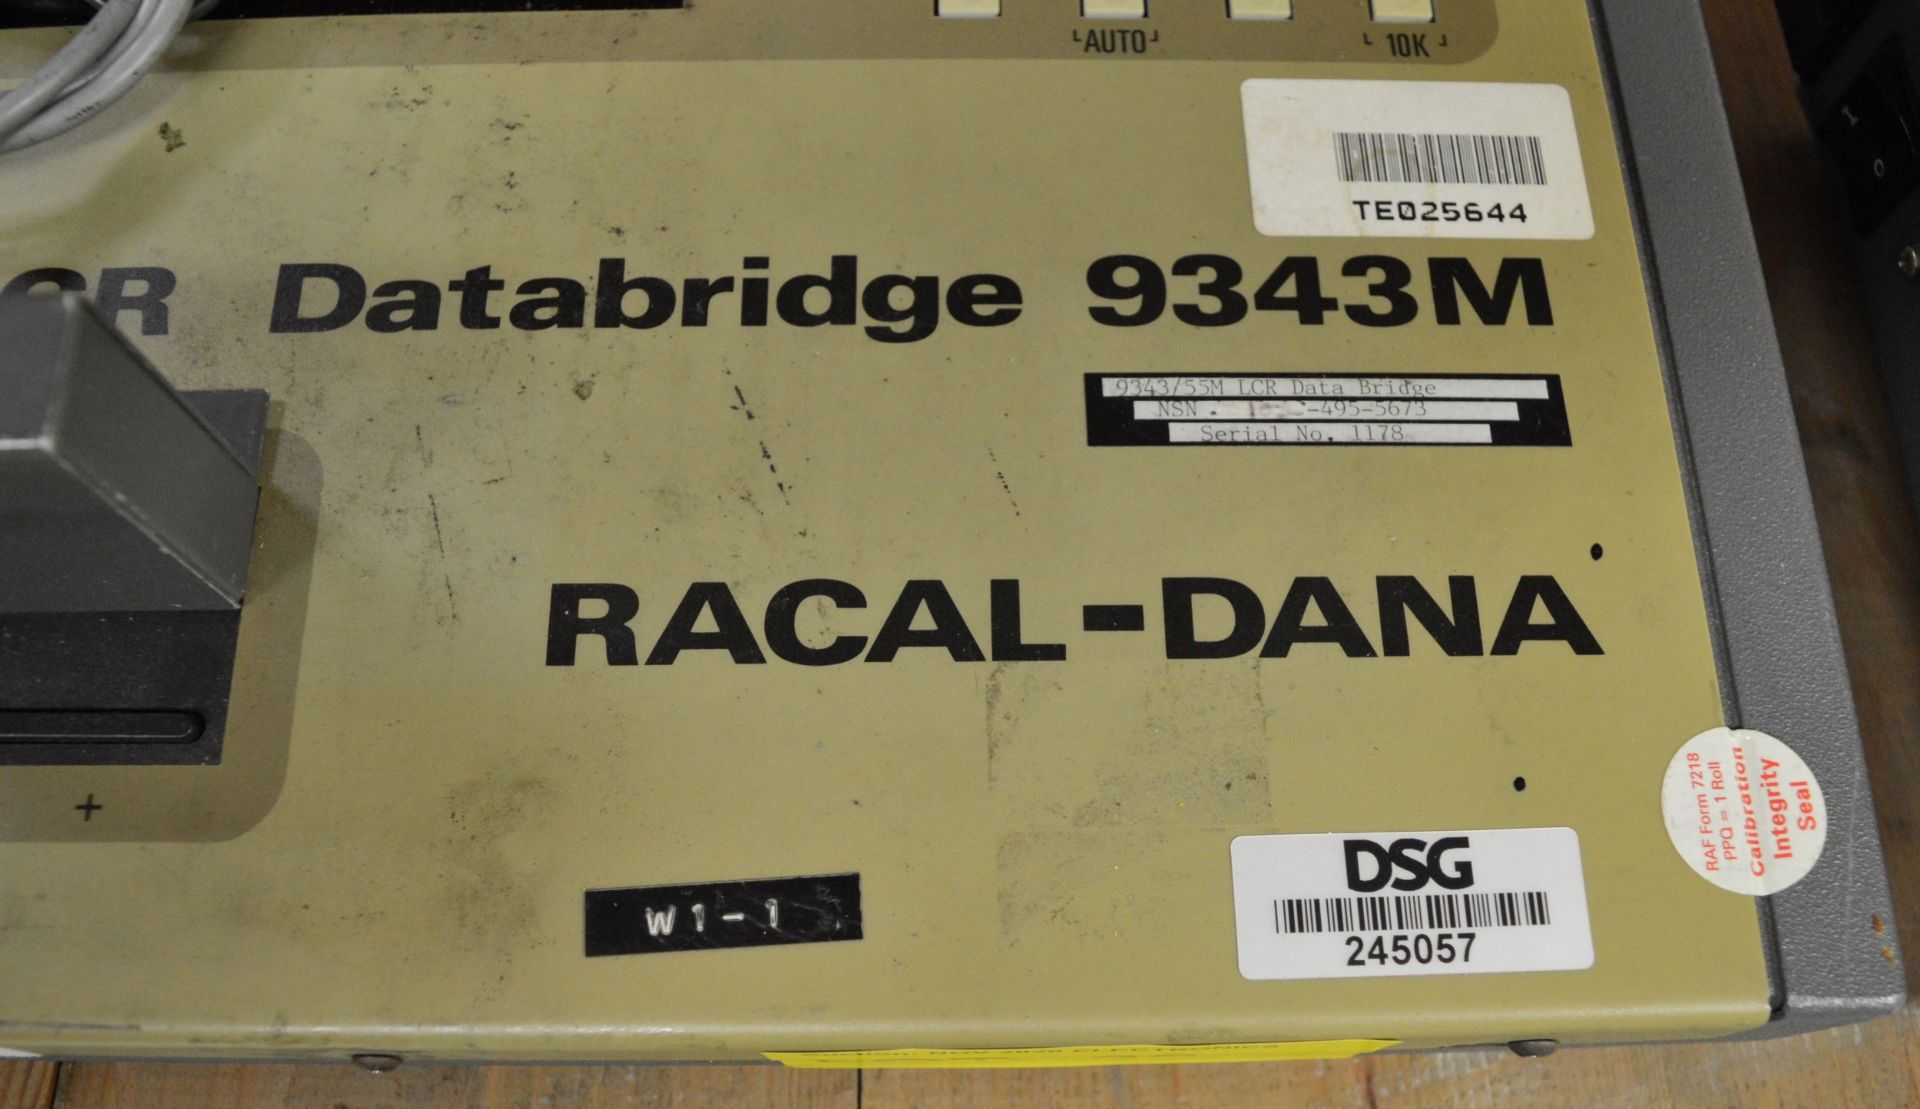 Racal-Dana LCR Databridge 9343M - Image 2 of 2